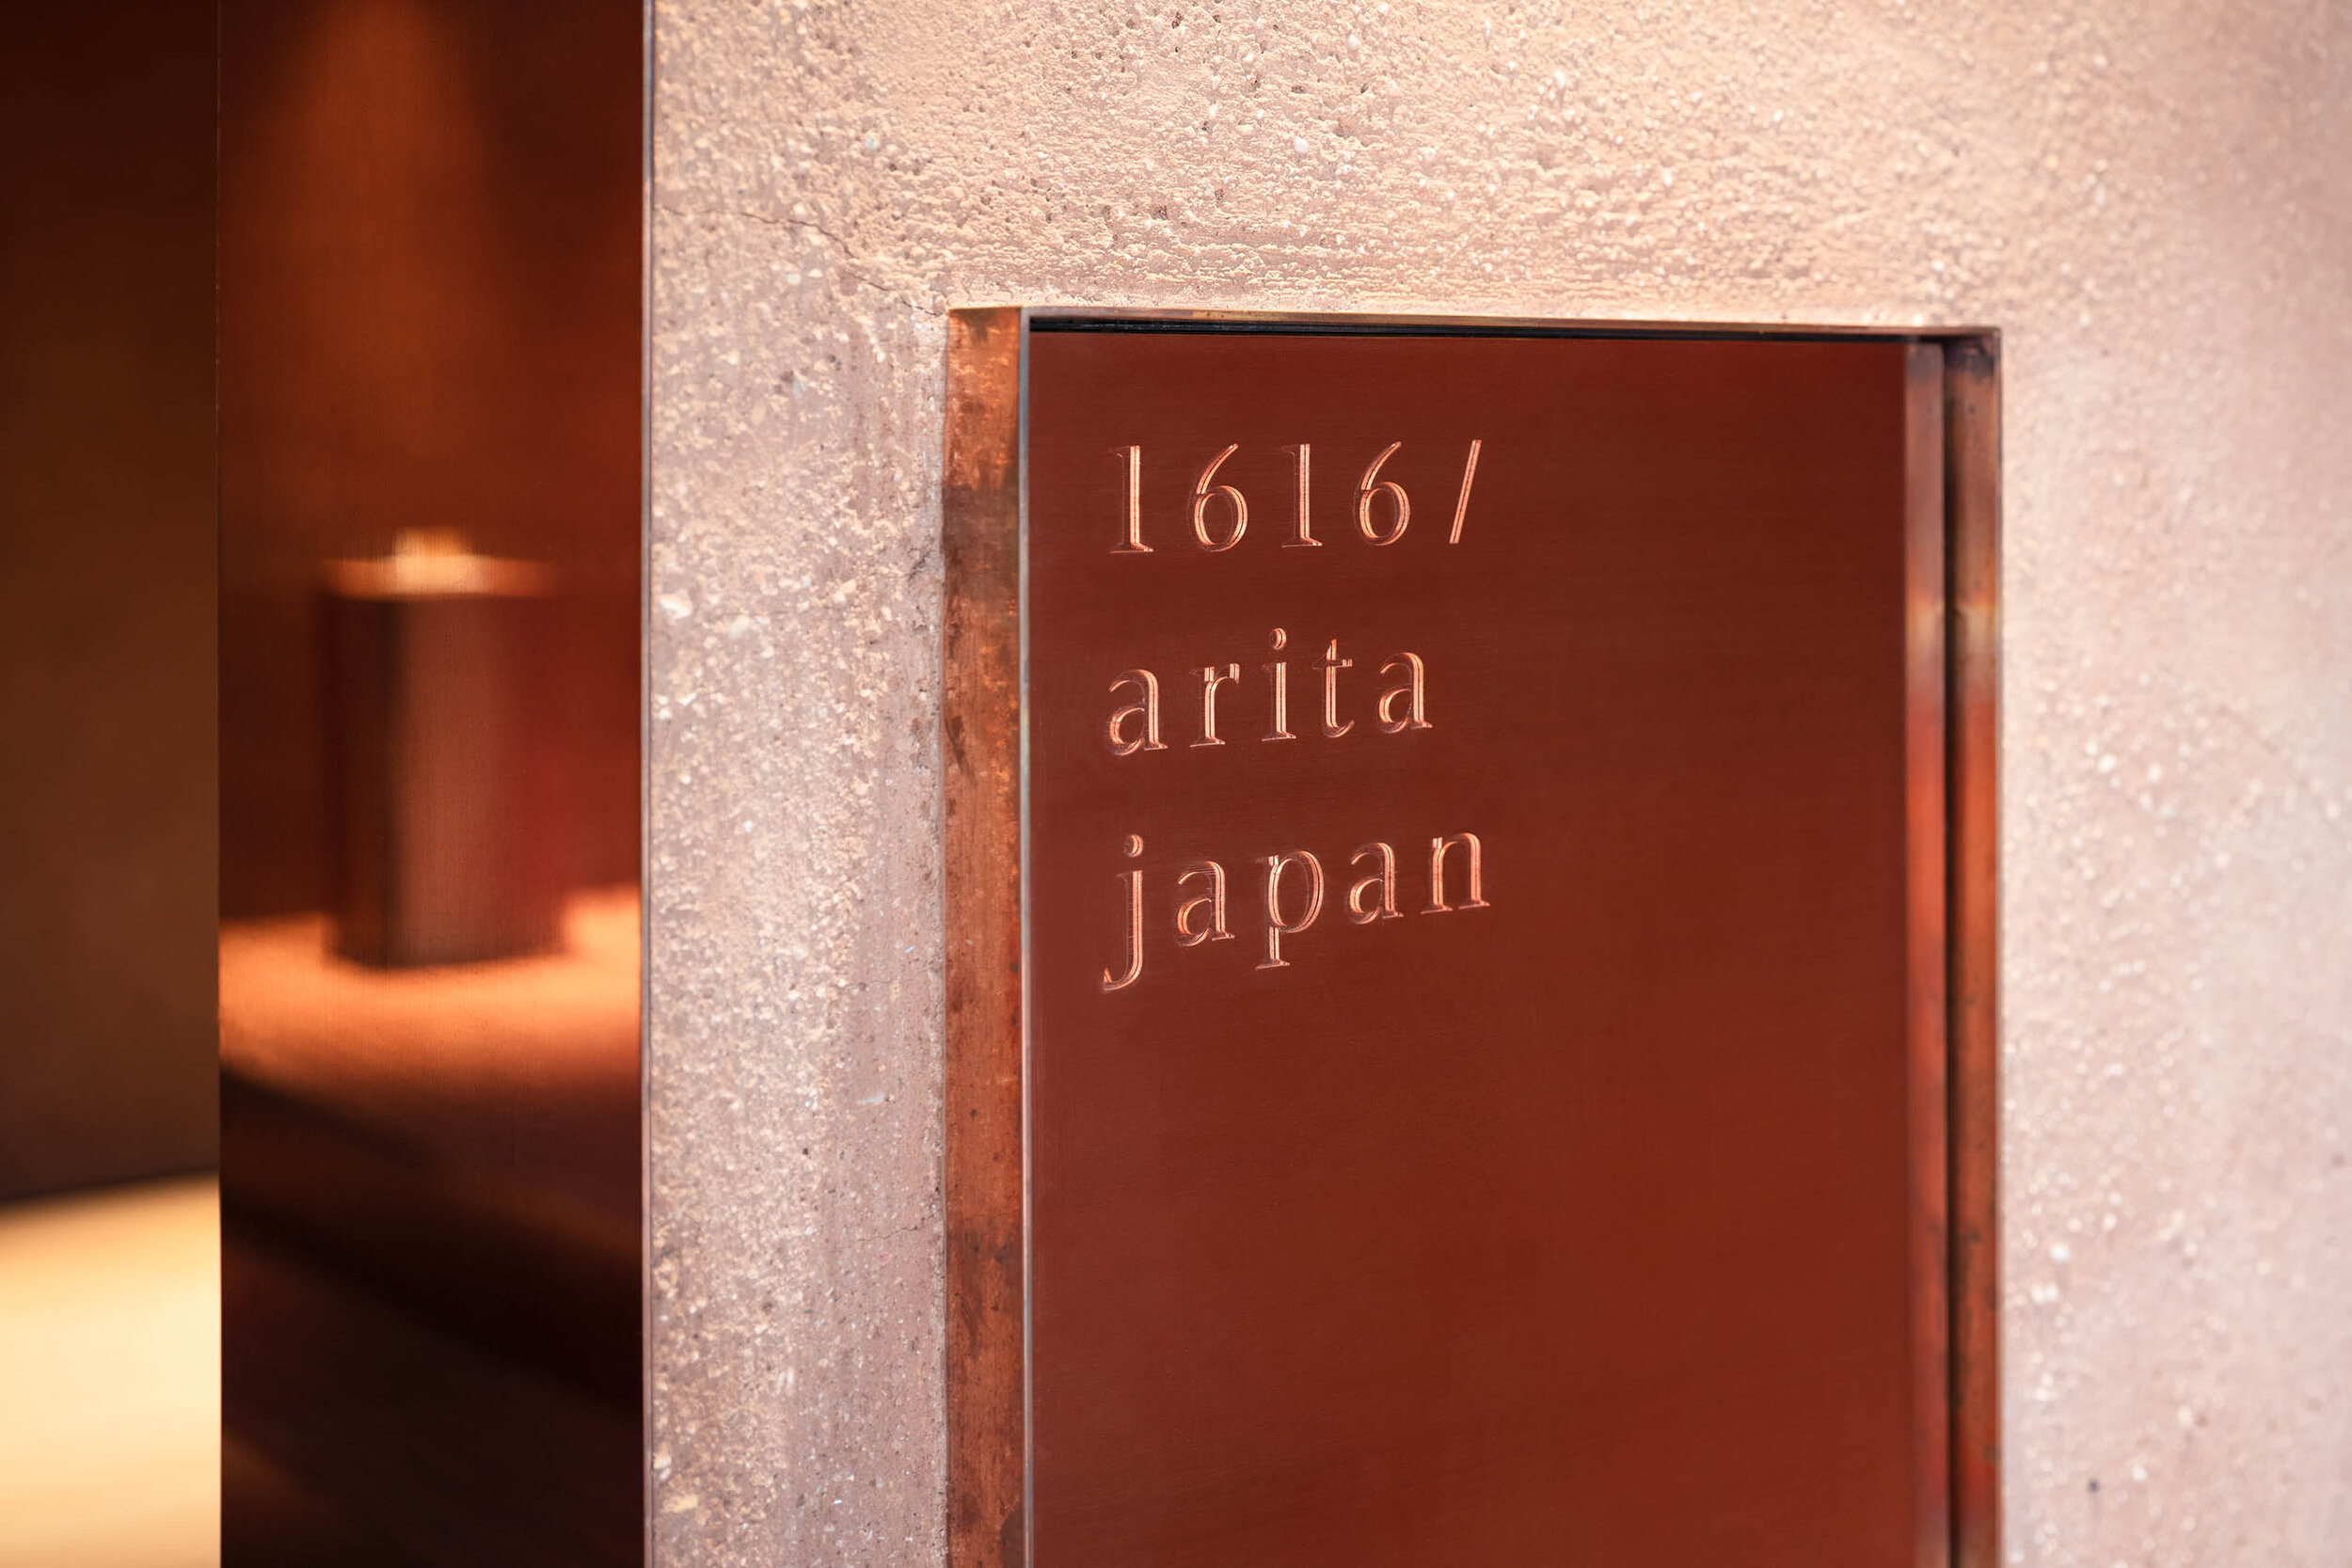  Teruhiro Yanagihara Studio installed copper signage plate for 1616/arita japan showroom in Arita, Japan. 